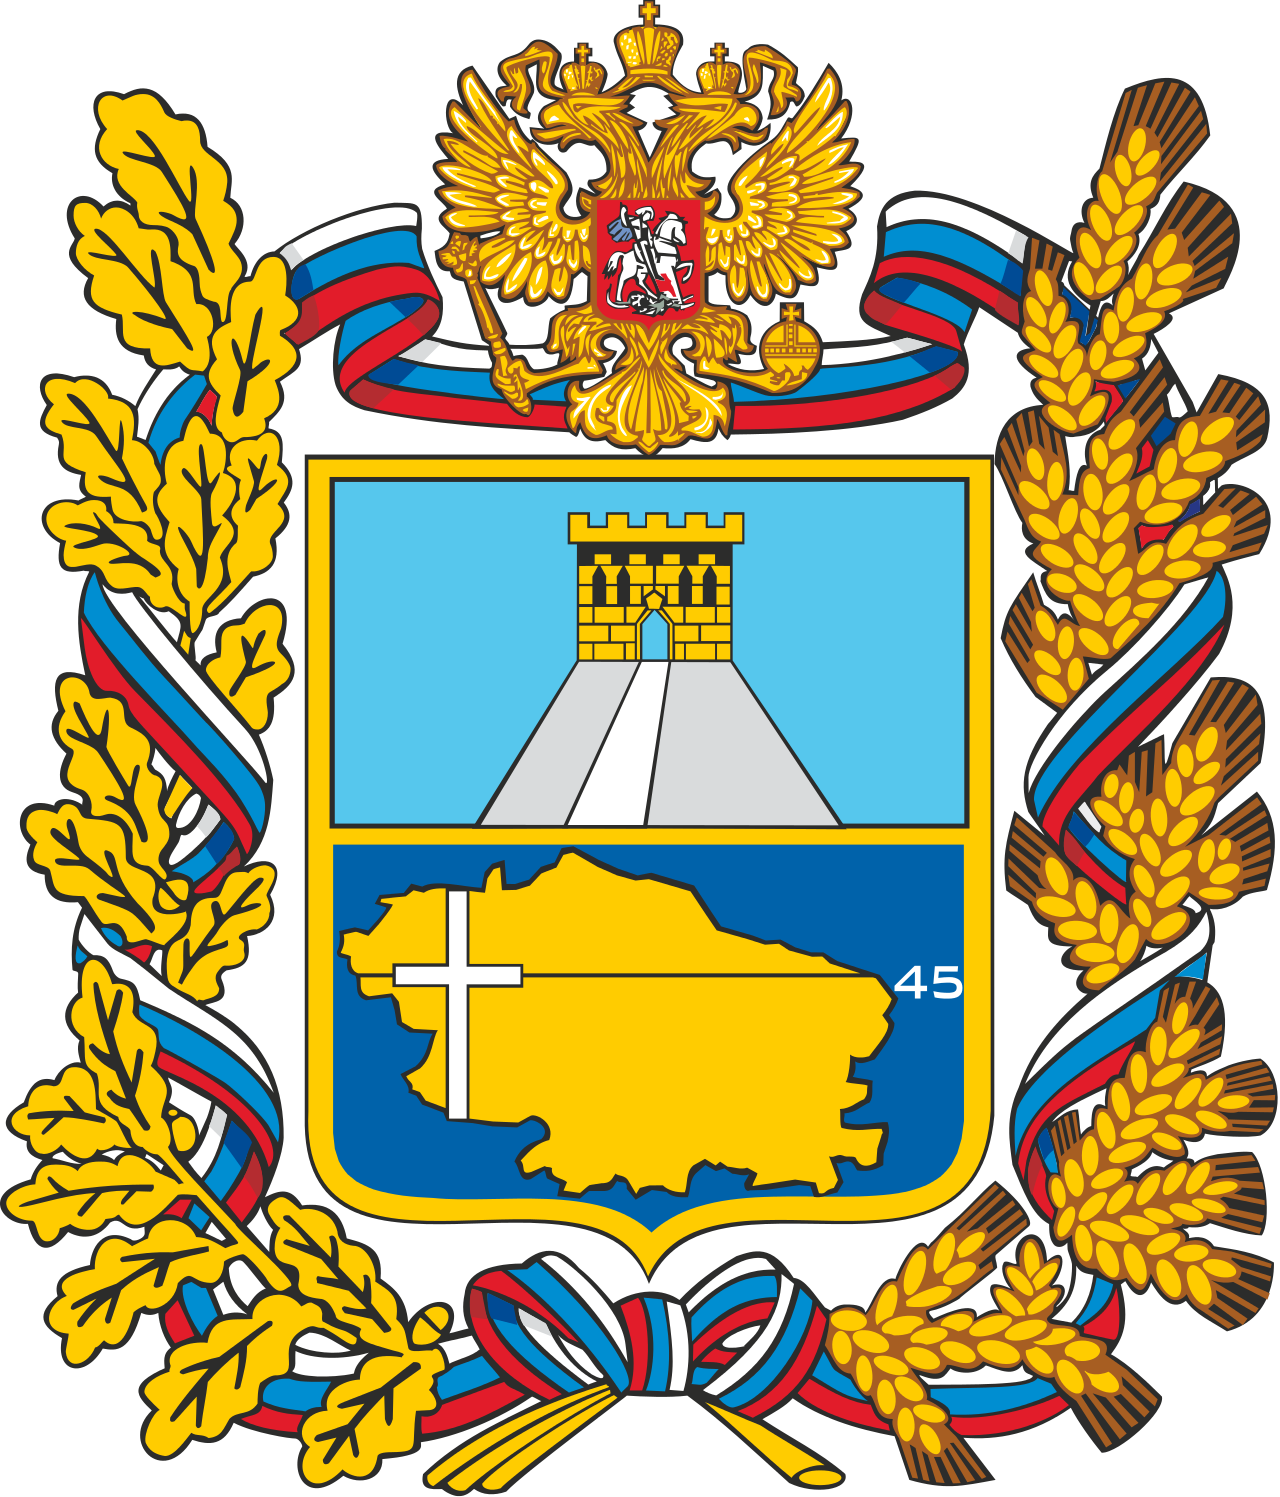 Правительство Ставропольского края